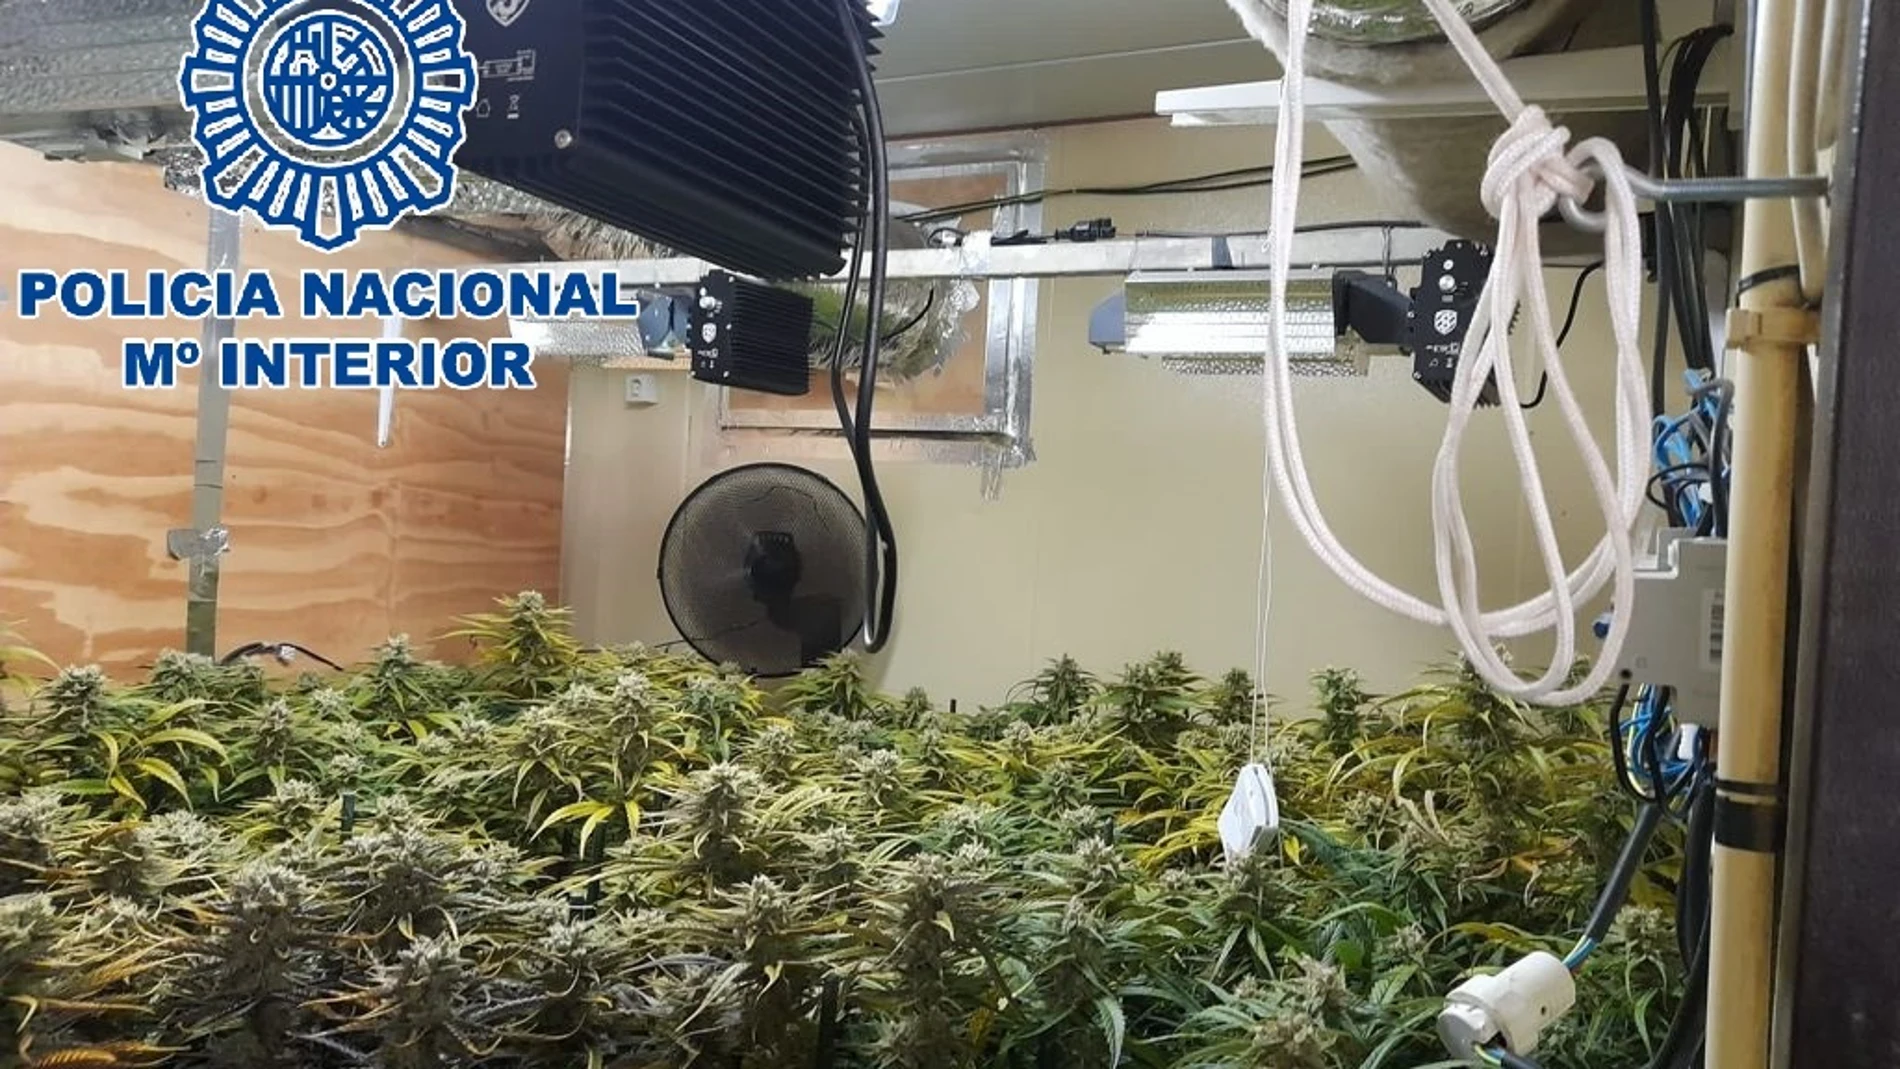 Plantanción indoor de marihuana desmantelada por la Policía Nacional en Sanlúcar de Barrameda